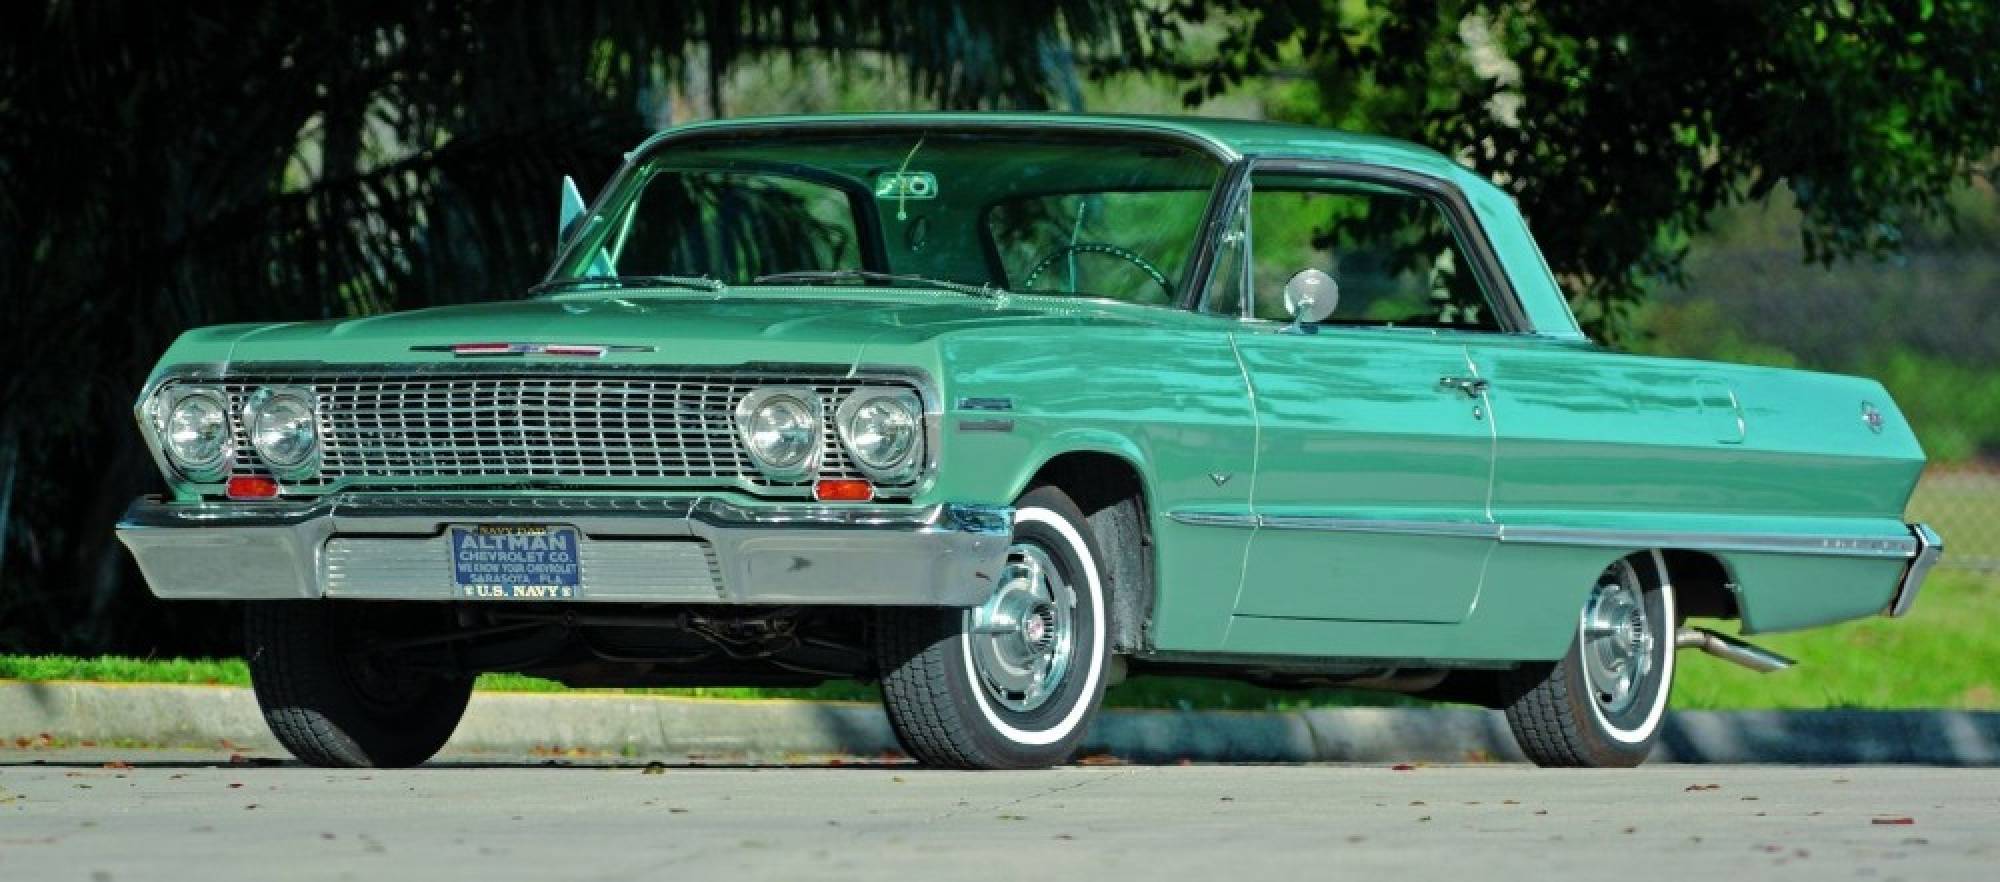 1963 Chevrolet Impala #2